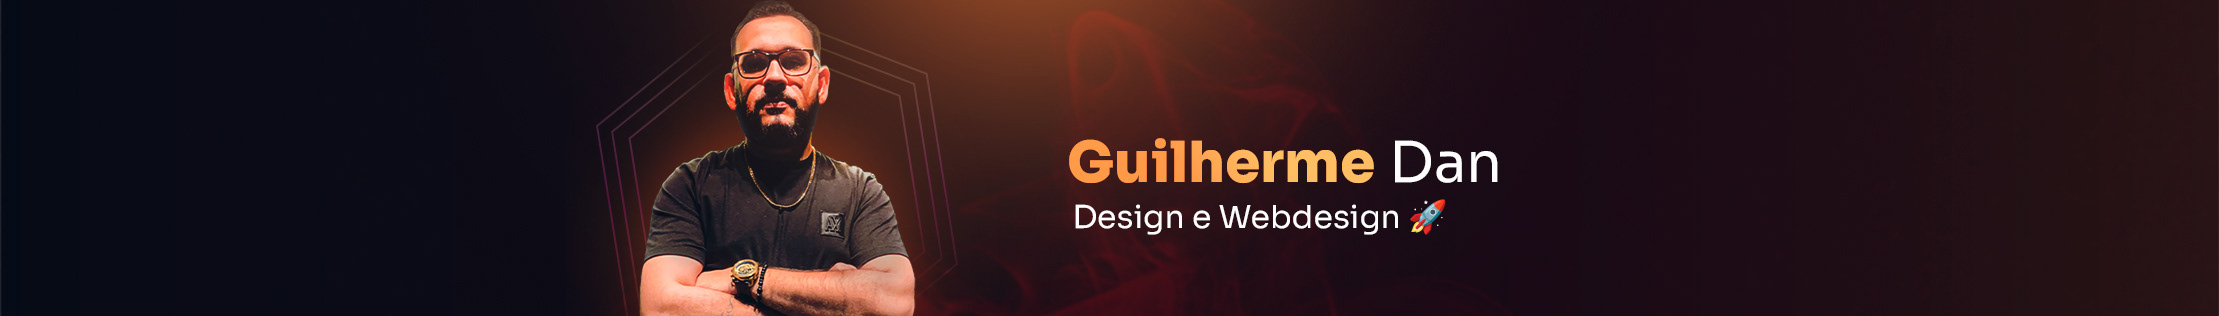 Guilherme Dan's profile banner